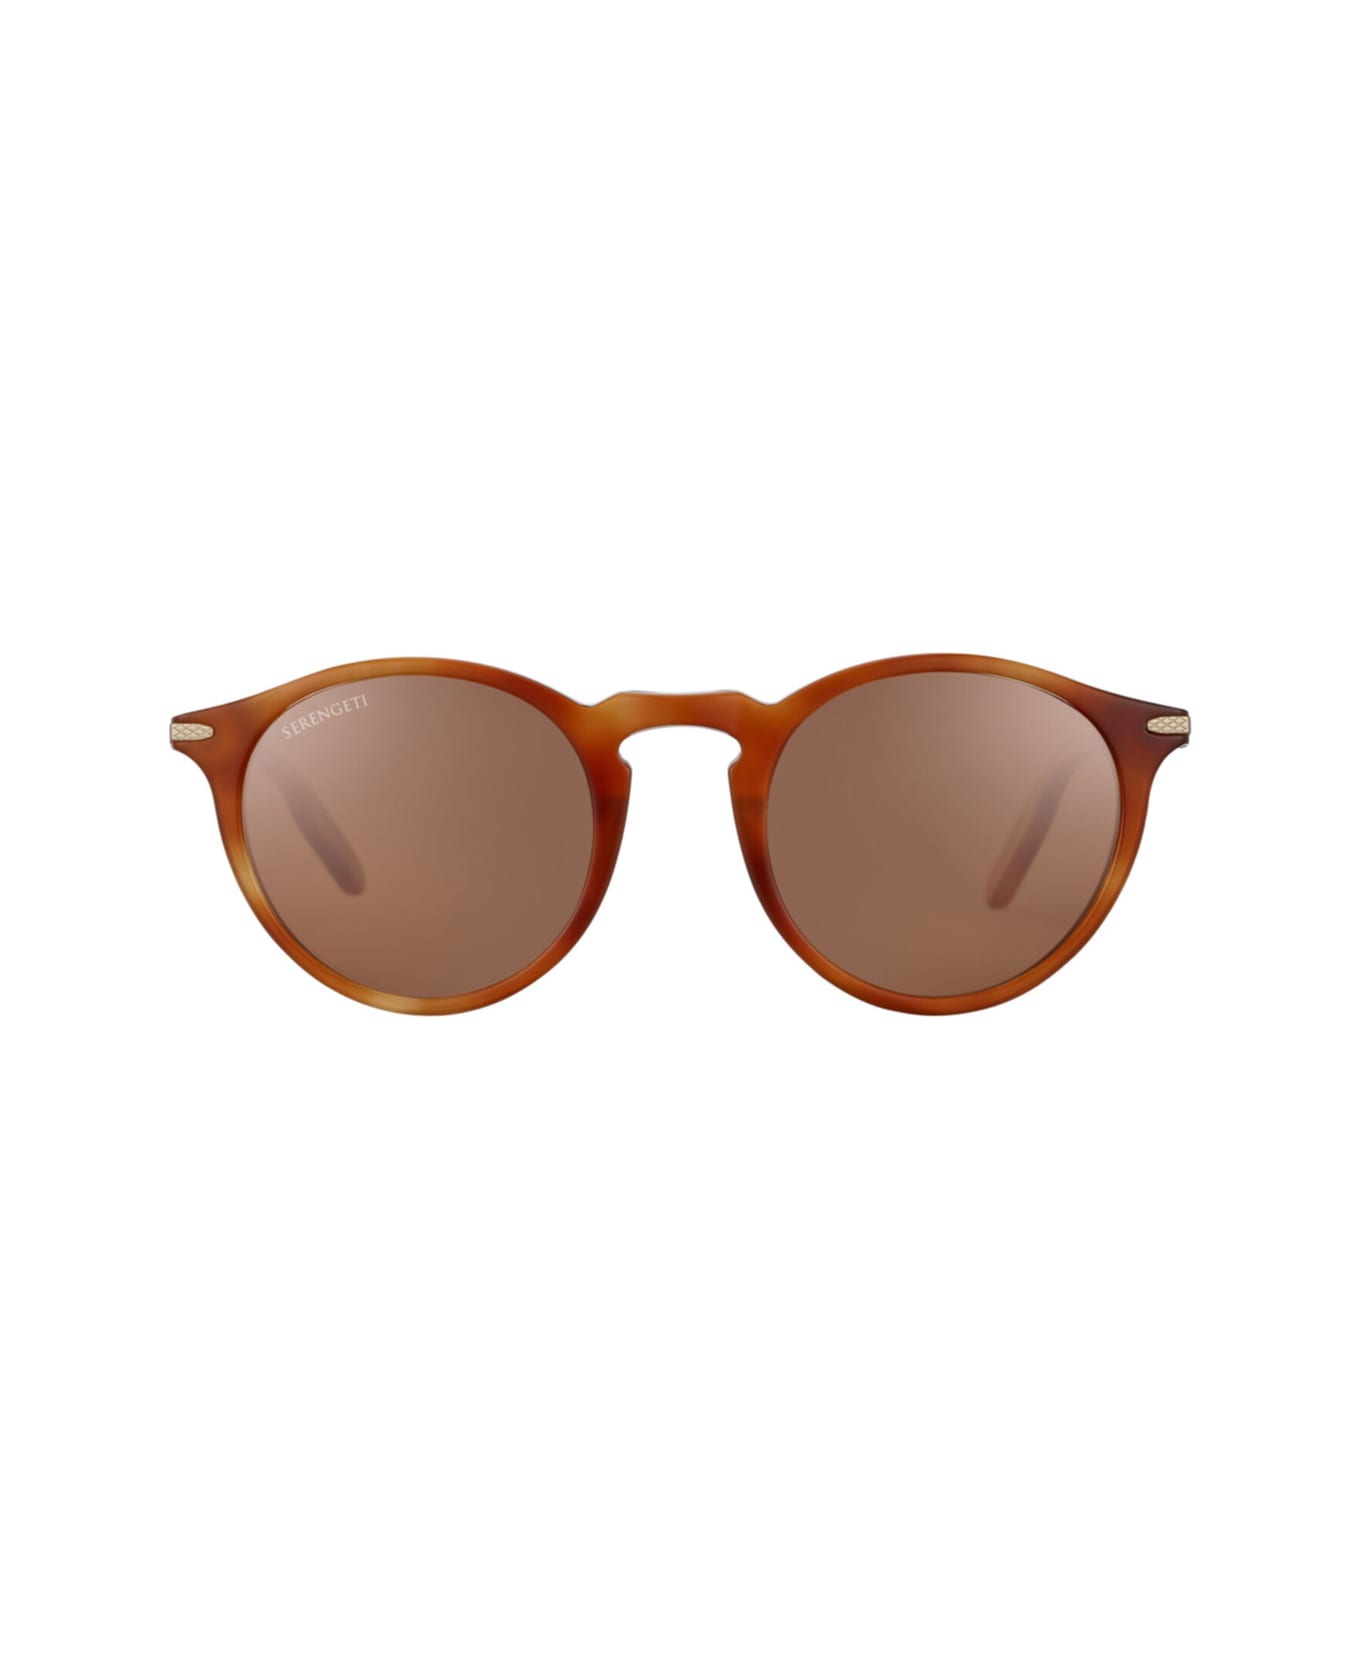 Serengeti Eyewear Raffaele 8953 Sunglasses - Caramello